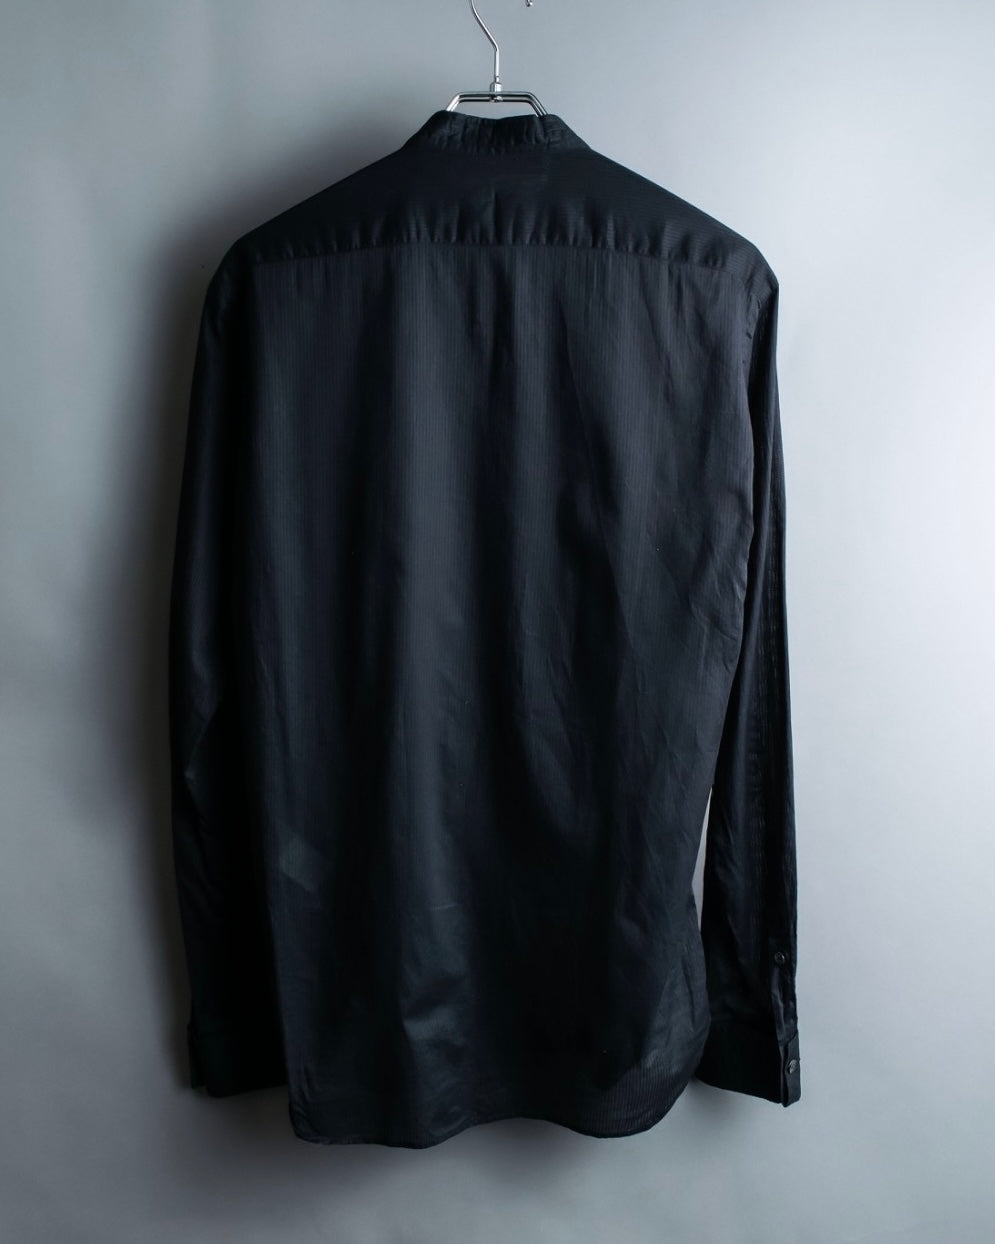 "John Galliano" stitched black dress shirt